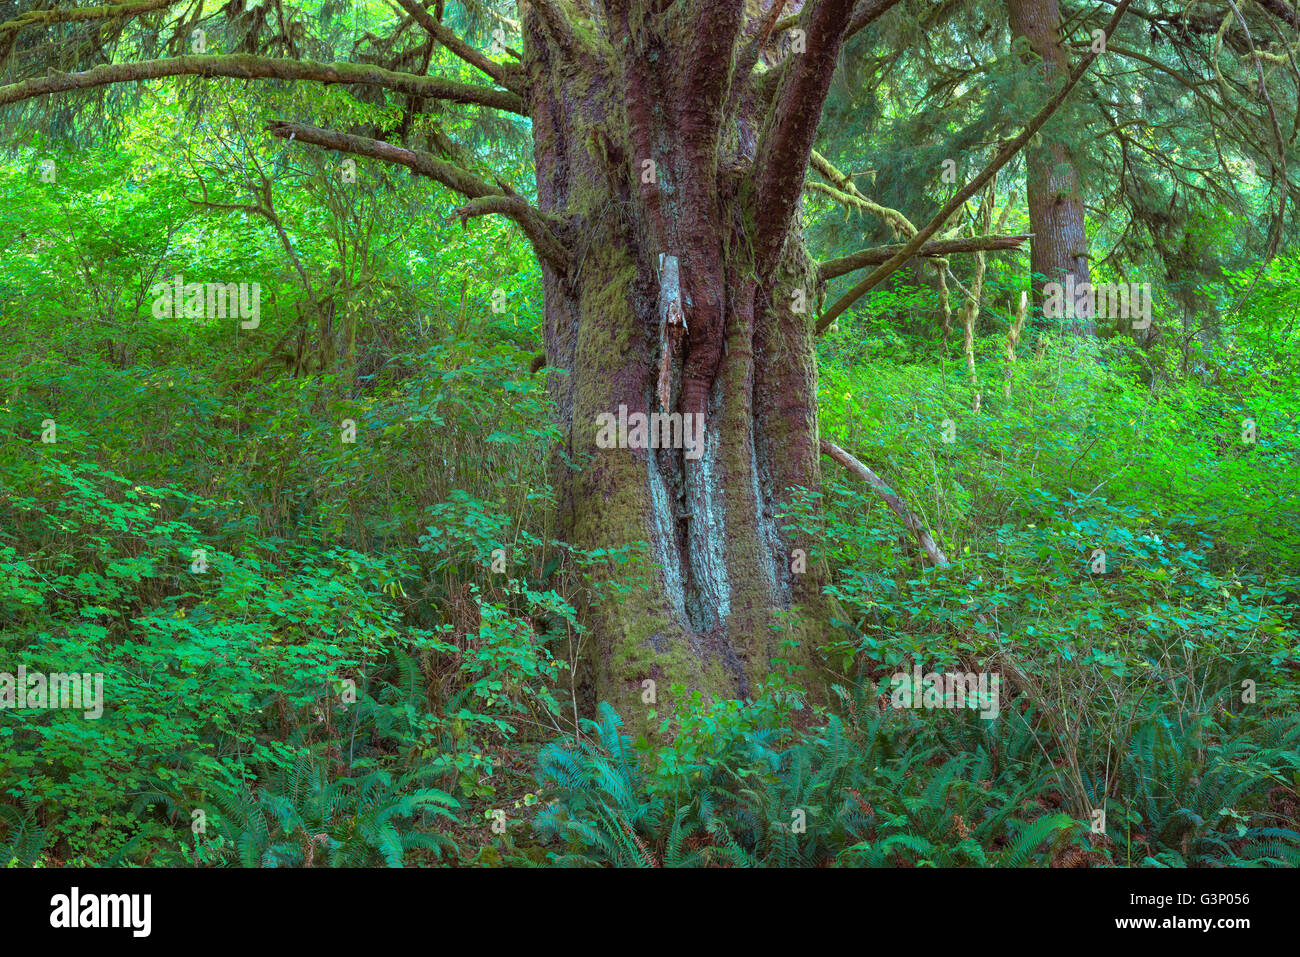 Stati Uniti d'America, Oregon, Siuslaw National Forest. Enorme Sitka Abete (Picea sitchensis) albero nella foresta pluviale costiera con un fitto sottobosco. Foto Stock